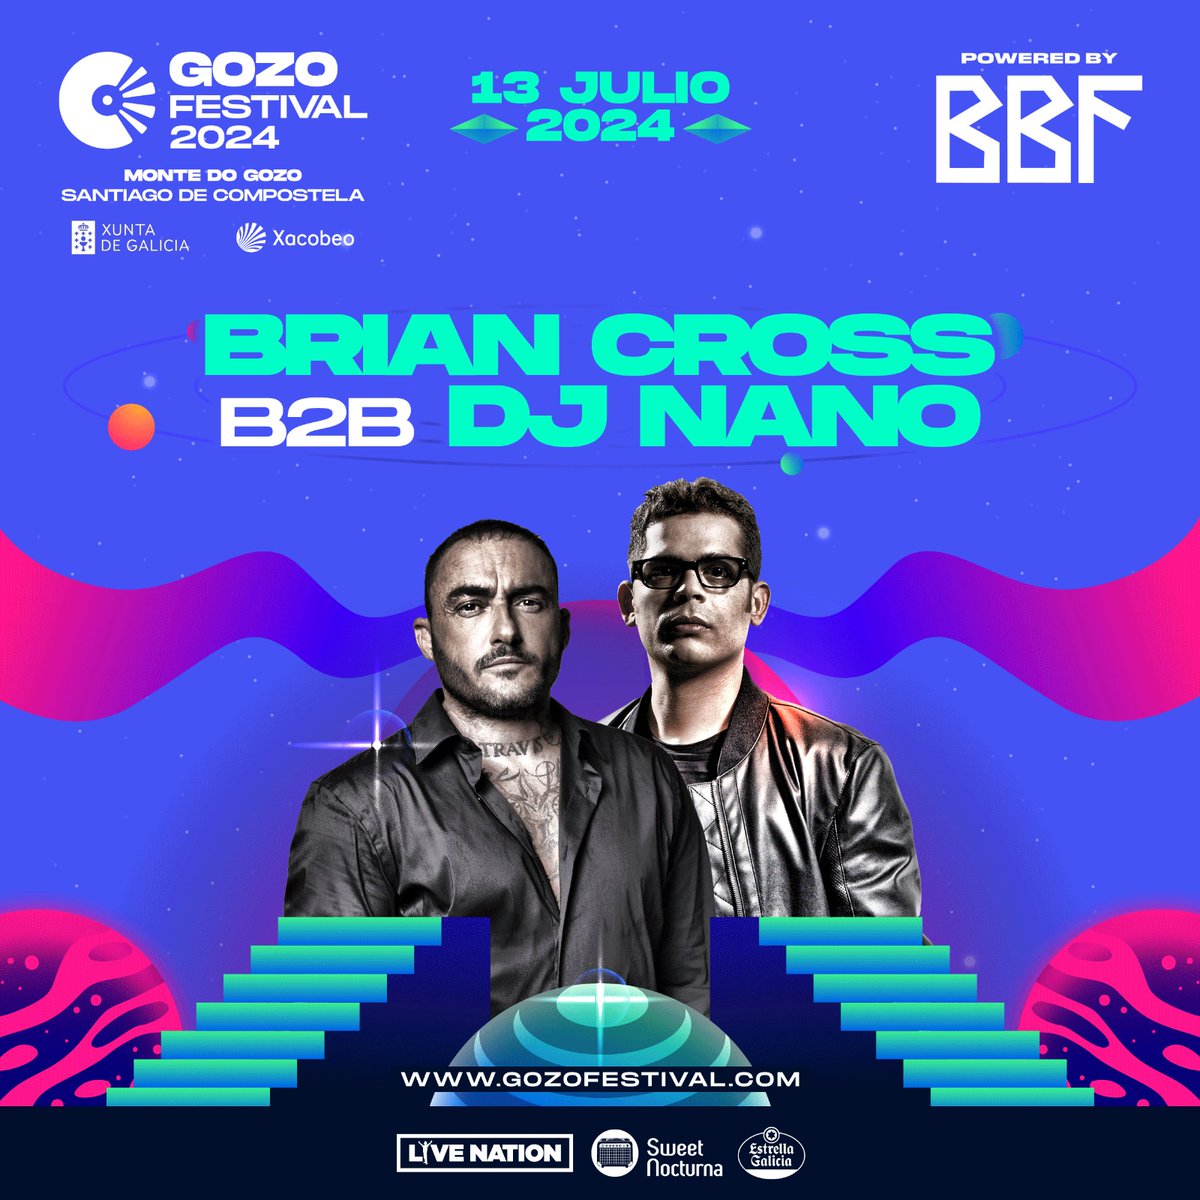 El B2B más esperado llega a O Gozo Festival - BBF este 13 de julio 😎

#XuntaDeGalicia #Xacobeo @turgalicia @estrellagalicia @livenationes @SweetNocturnaES